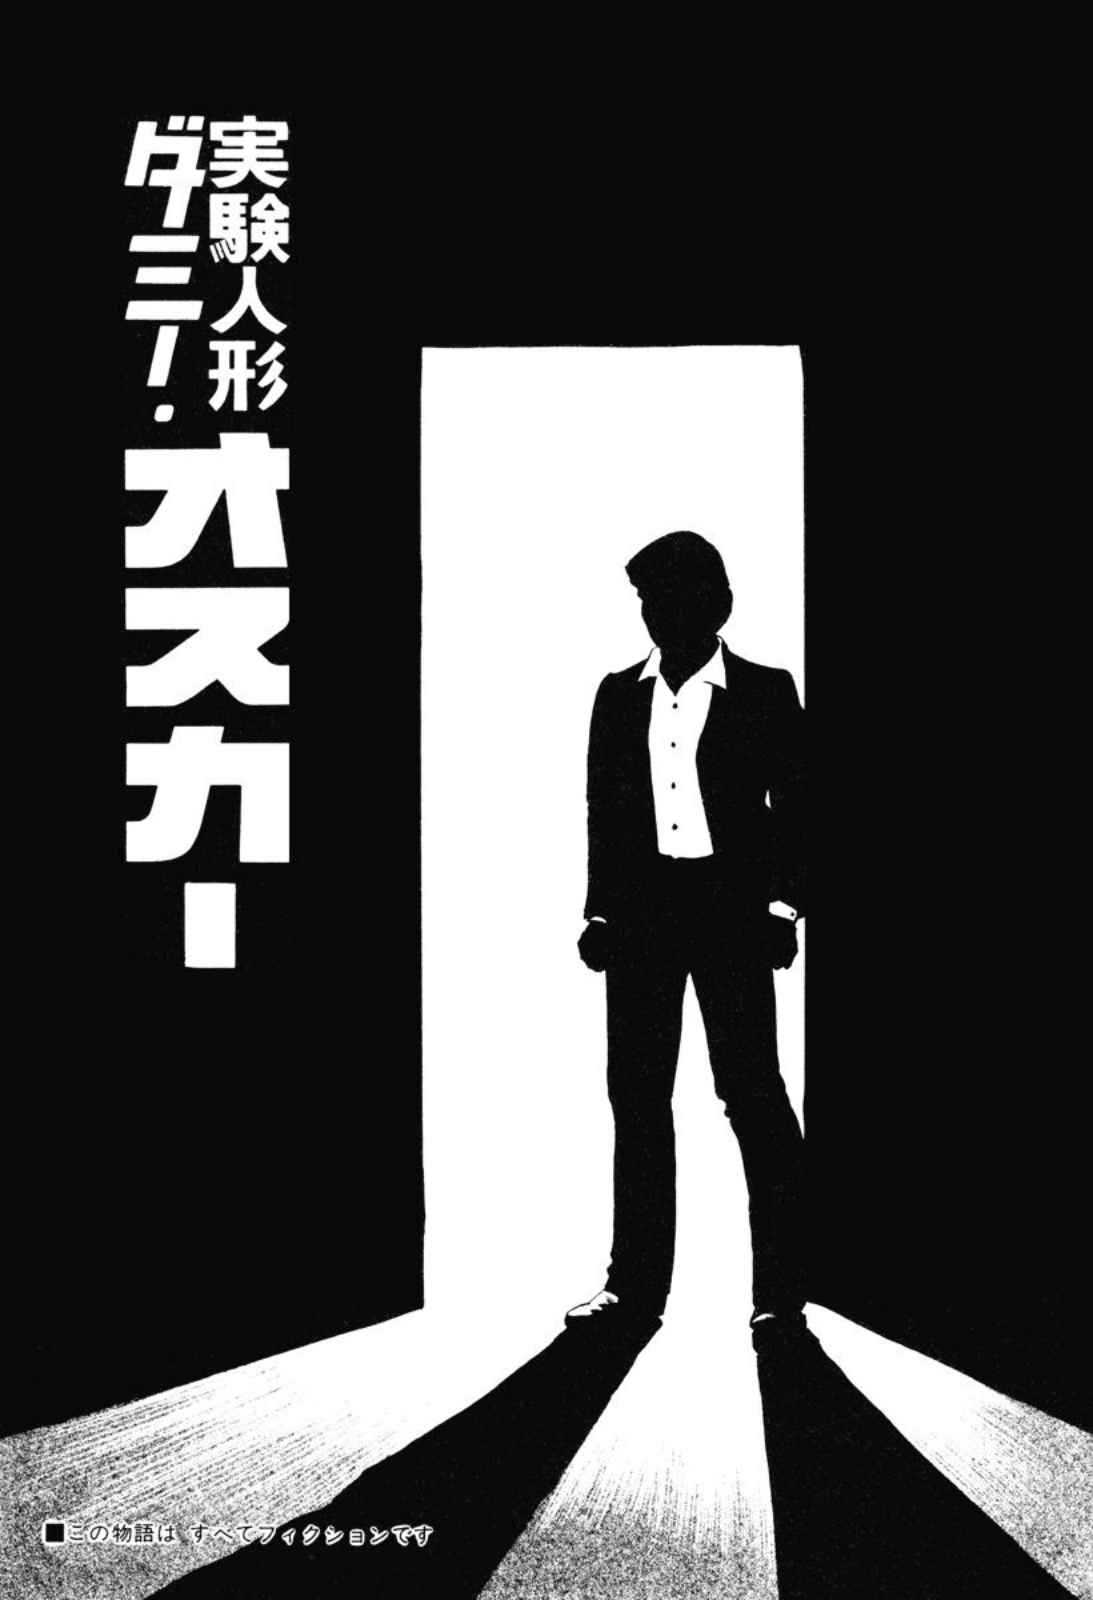 [Kano Seisaku, Koike Kazuo] Jikken Ningyou Dummy Oscar Vol.03 [叶精作, 小池一夫] 実験人形ダミー・オスカー 第03巻